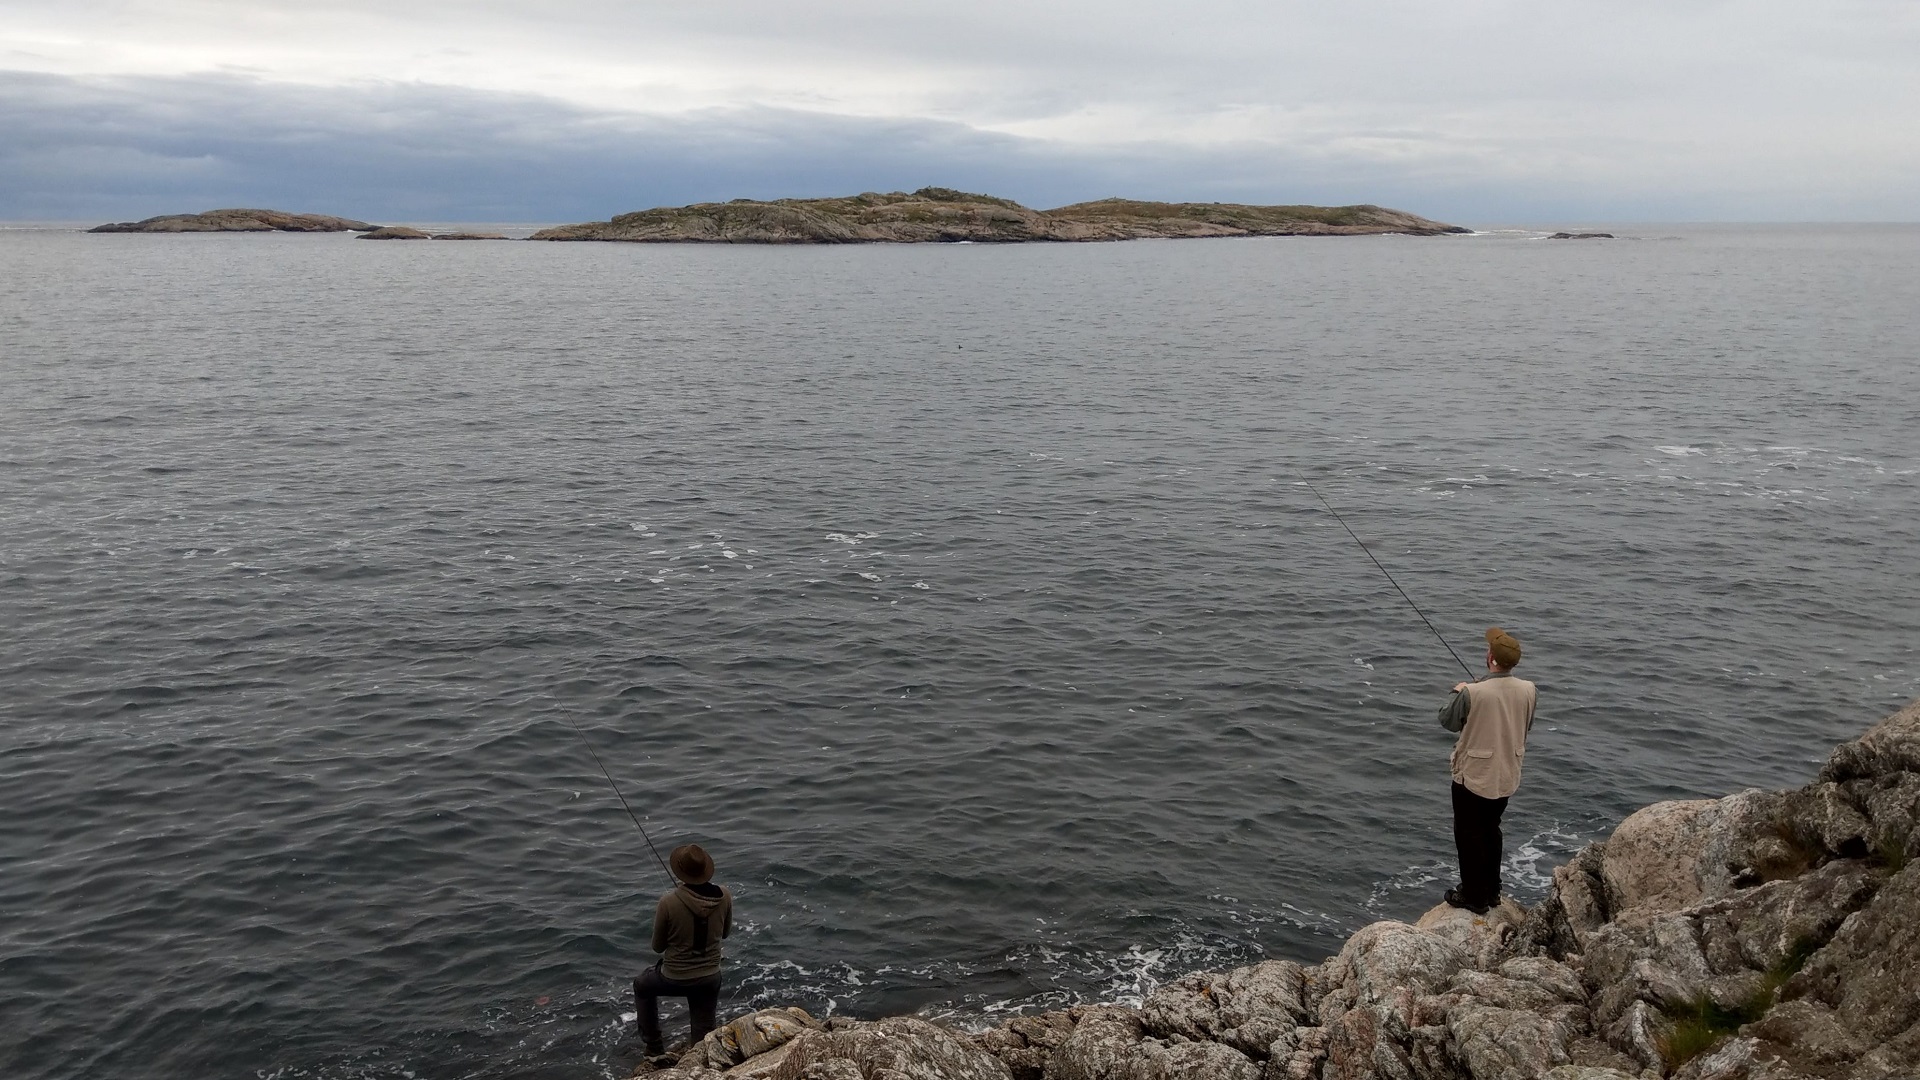 Gunnars Freunde angeln an der felsigen Südküste von Skjernøya bei Mandal, an der das Wasser direkt sehr tief abfällt